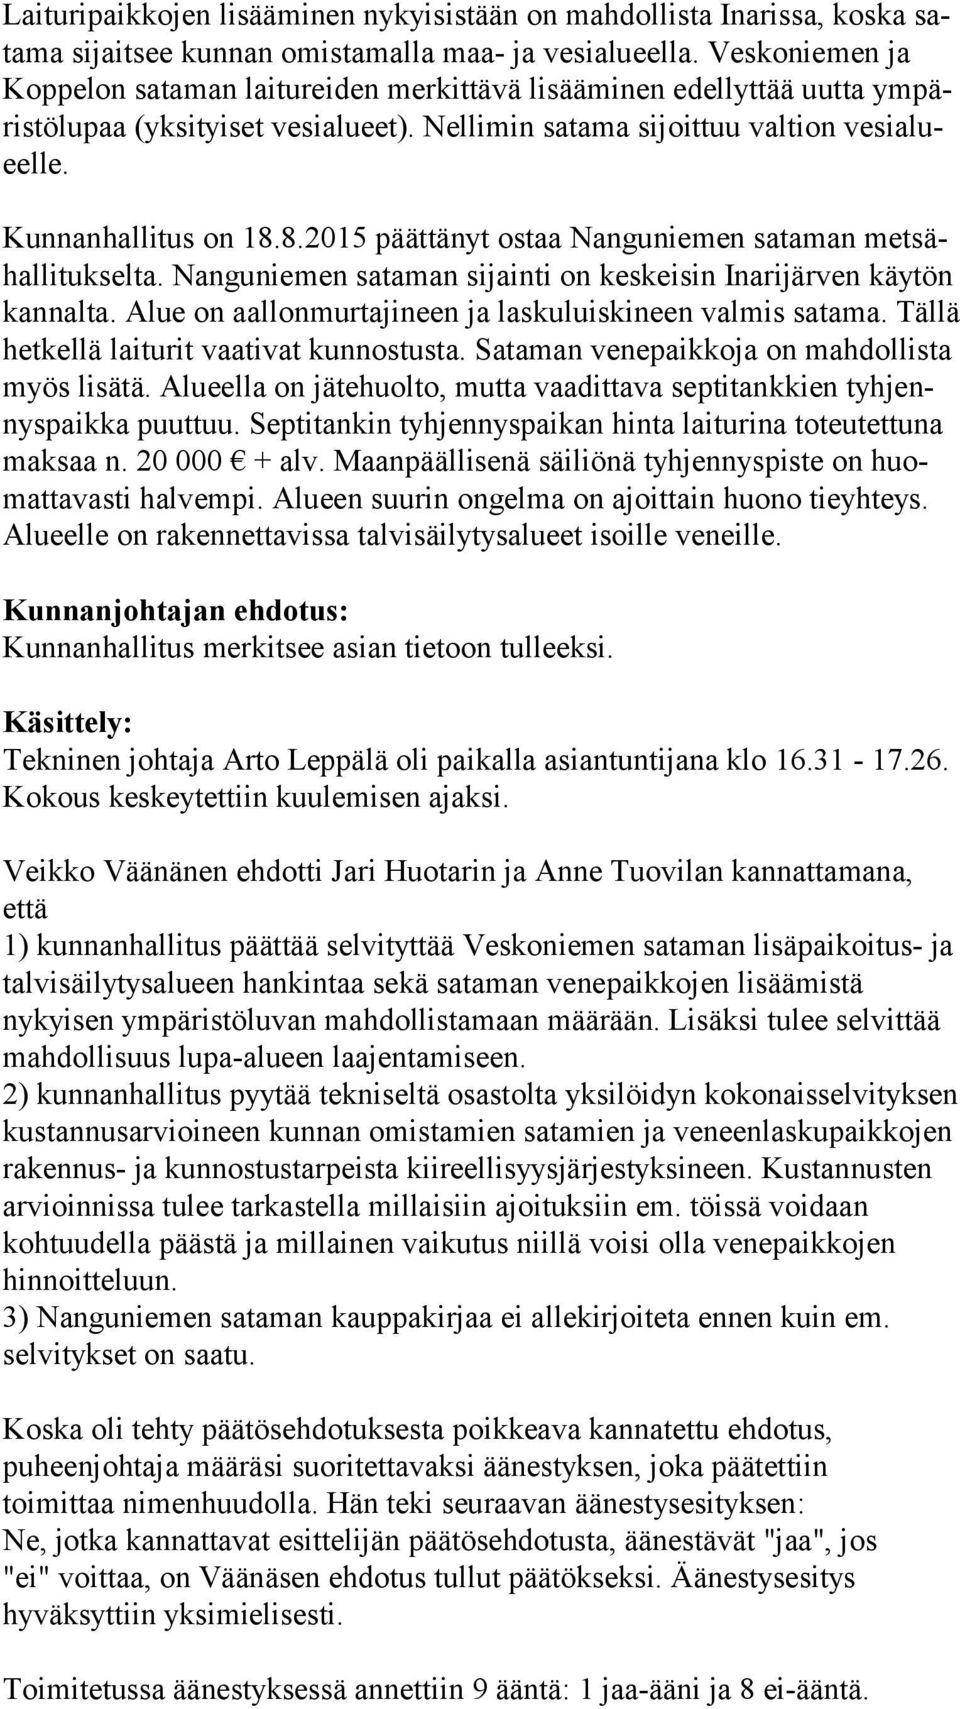 Kunnanhallitus on 18.8.2015 päättänyt ostaa Nanguniemen sataman met sähal li tuk sel ta. Nanguniemen sataman sijainti on keskeisin Inarijärven käytön kan nal ta.